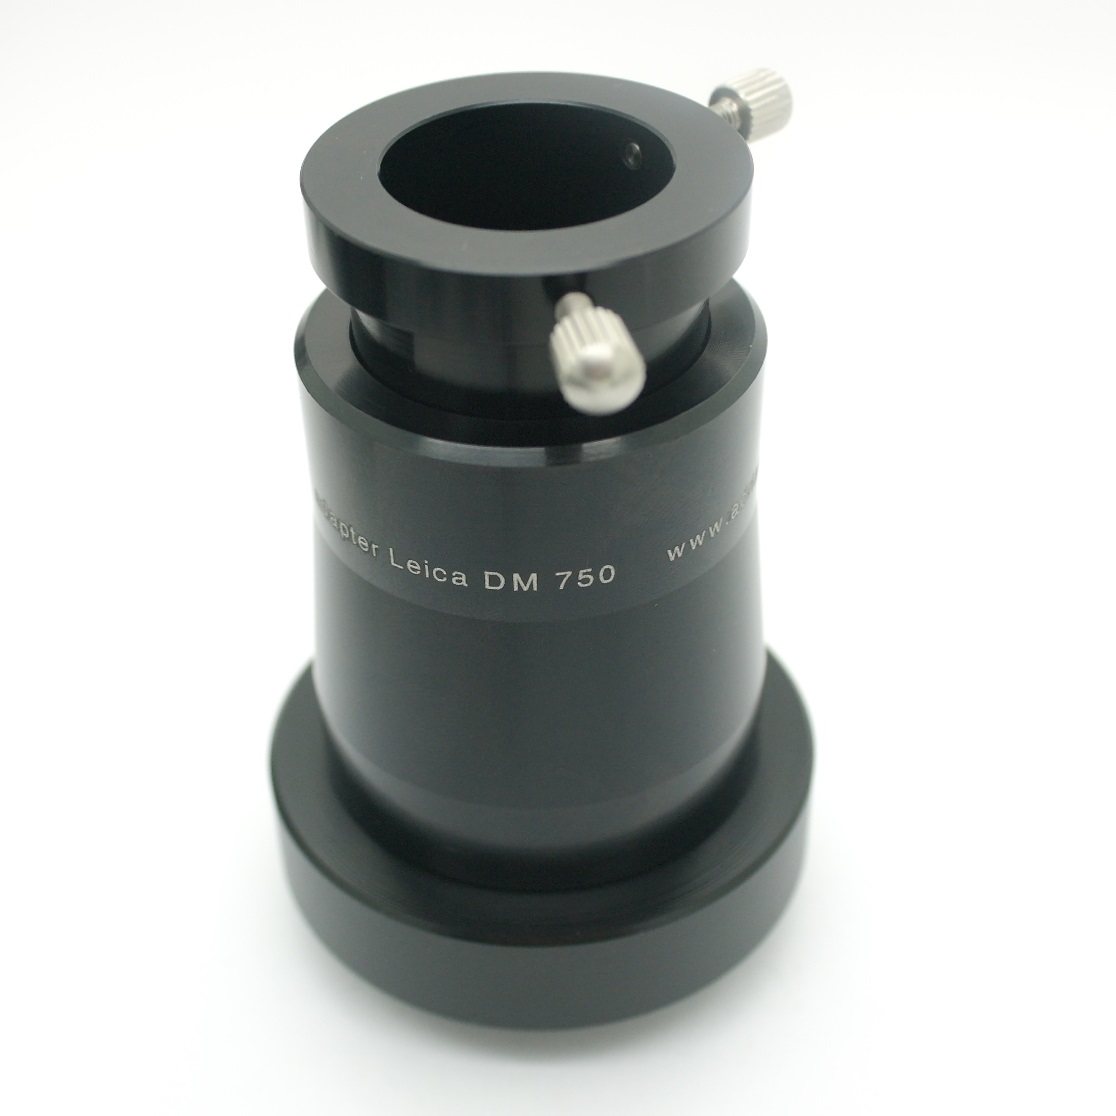 Raccordo, adattatore microscopio Leica DM 750 a camere Ø 23,2mm